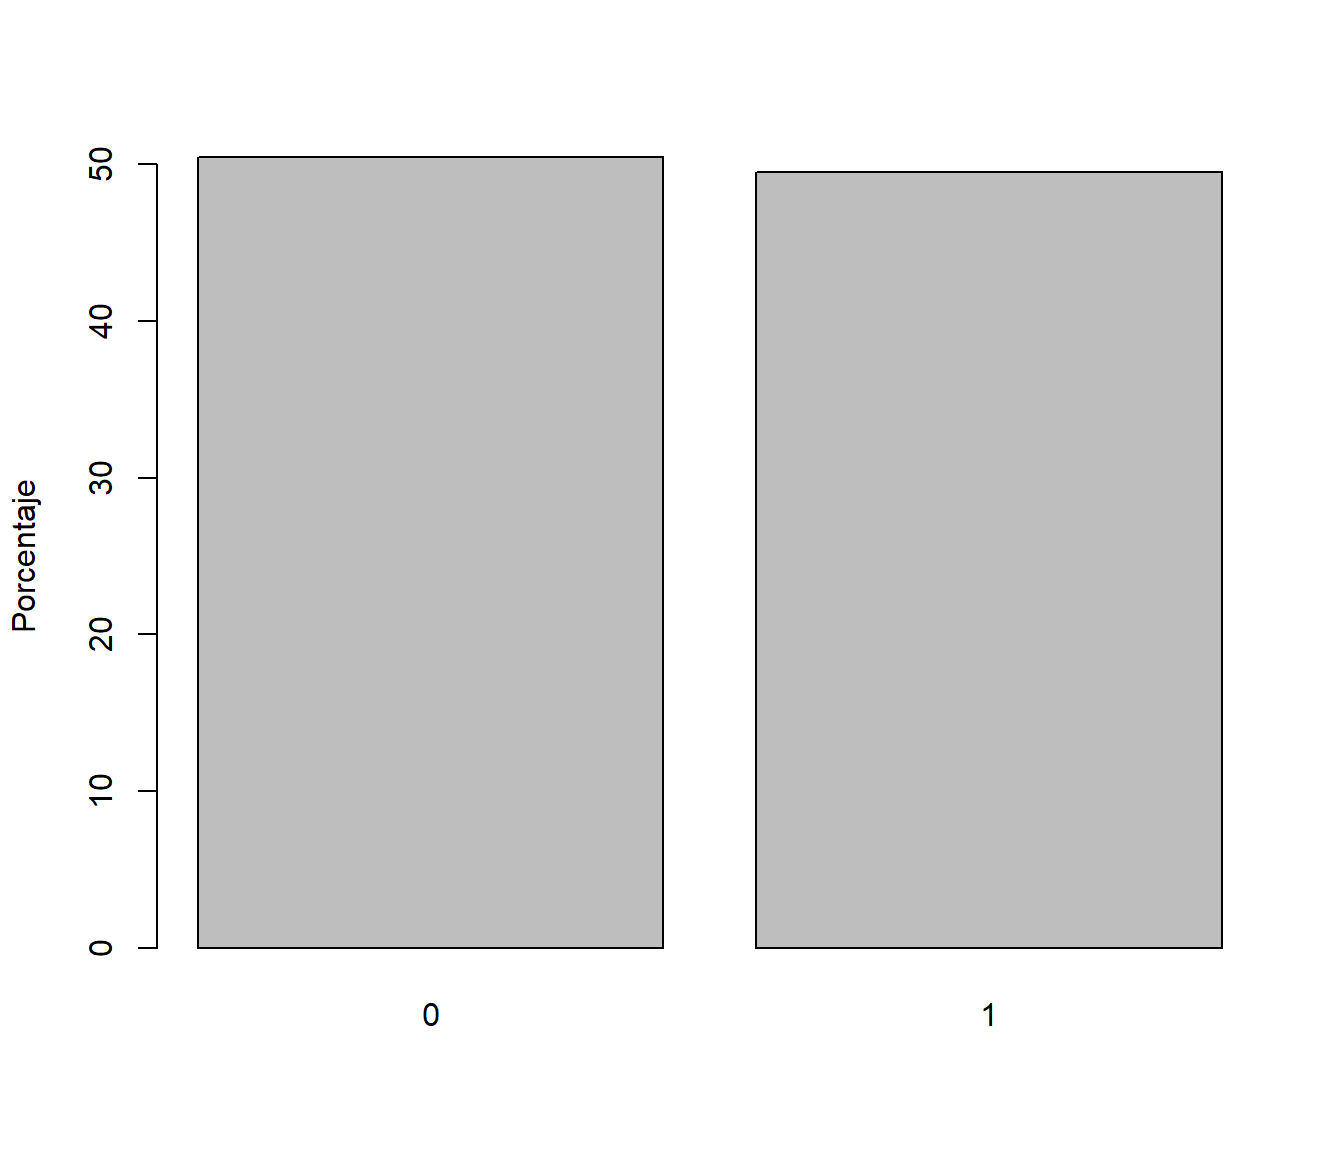 Frecuencias relativas de los valores generados con distribución Bernoulli (aproximaciones por simulación de las probabilidades teóricas).